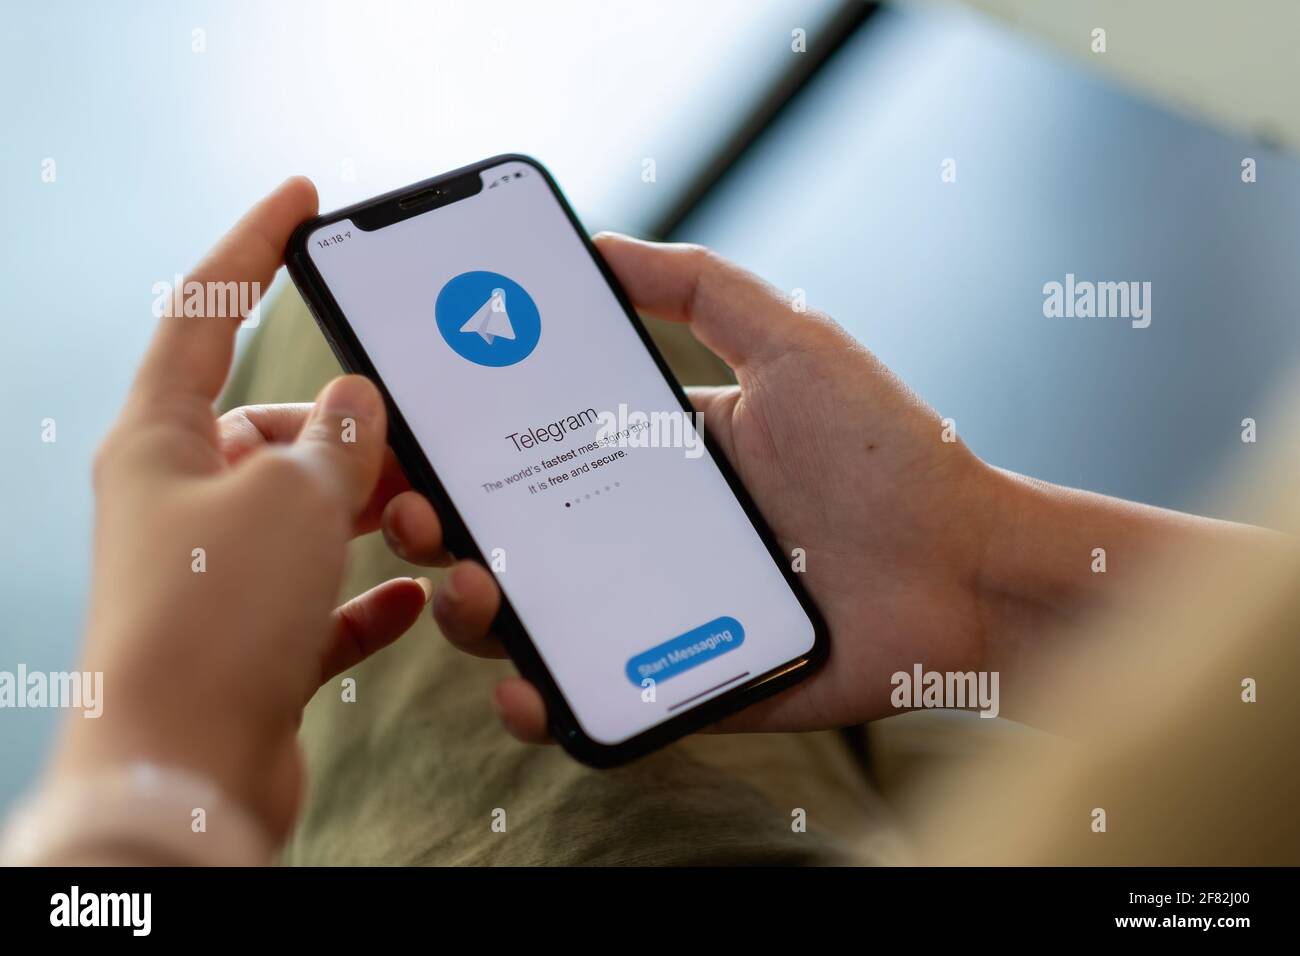 CHIANG MAI, TAILANDIA - 11 DE ABRIL de 2021: Mujer de la mano que sostiene iPhone X con el servicio de redes sociales Telegram en la pantalla. IPhone 10 fue creado y. Foto de stock